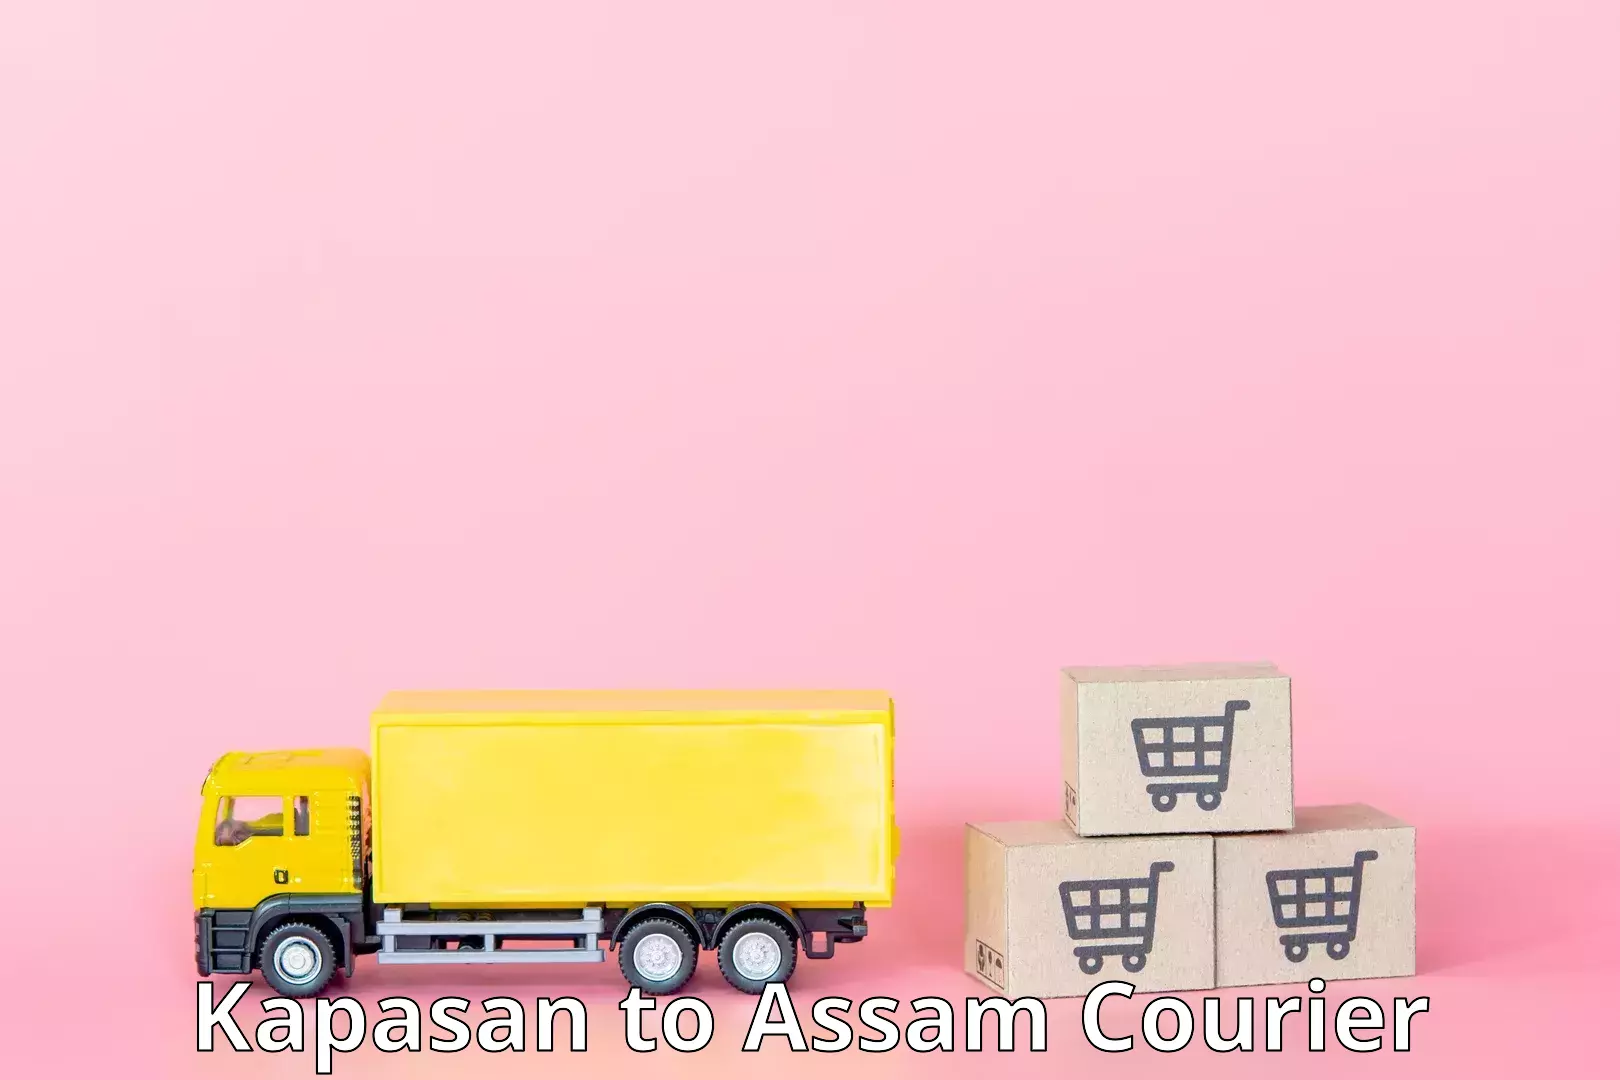 Nationwide courier service Kapasan to Assam